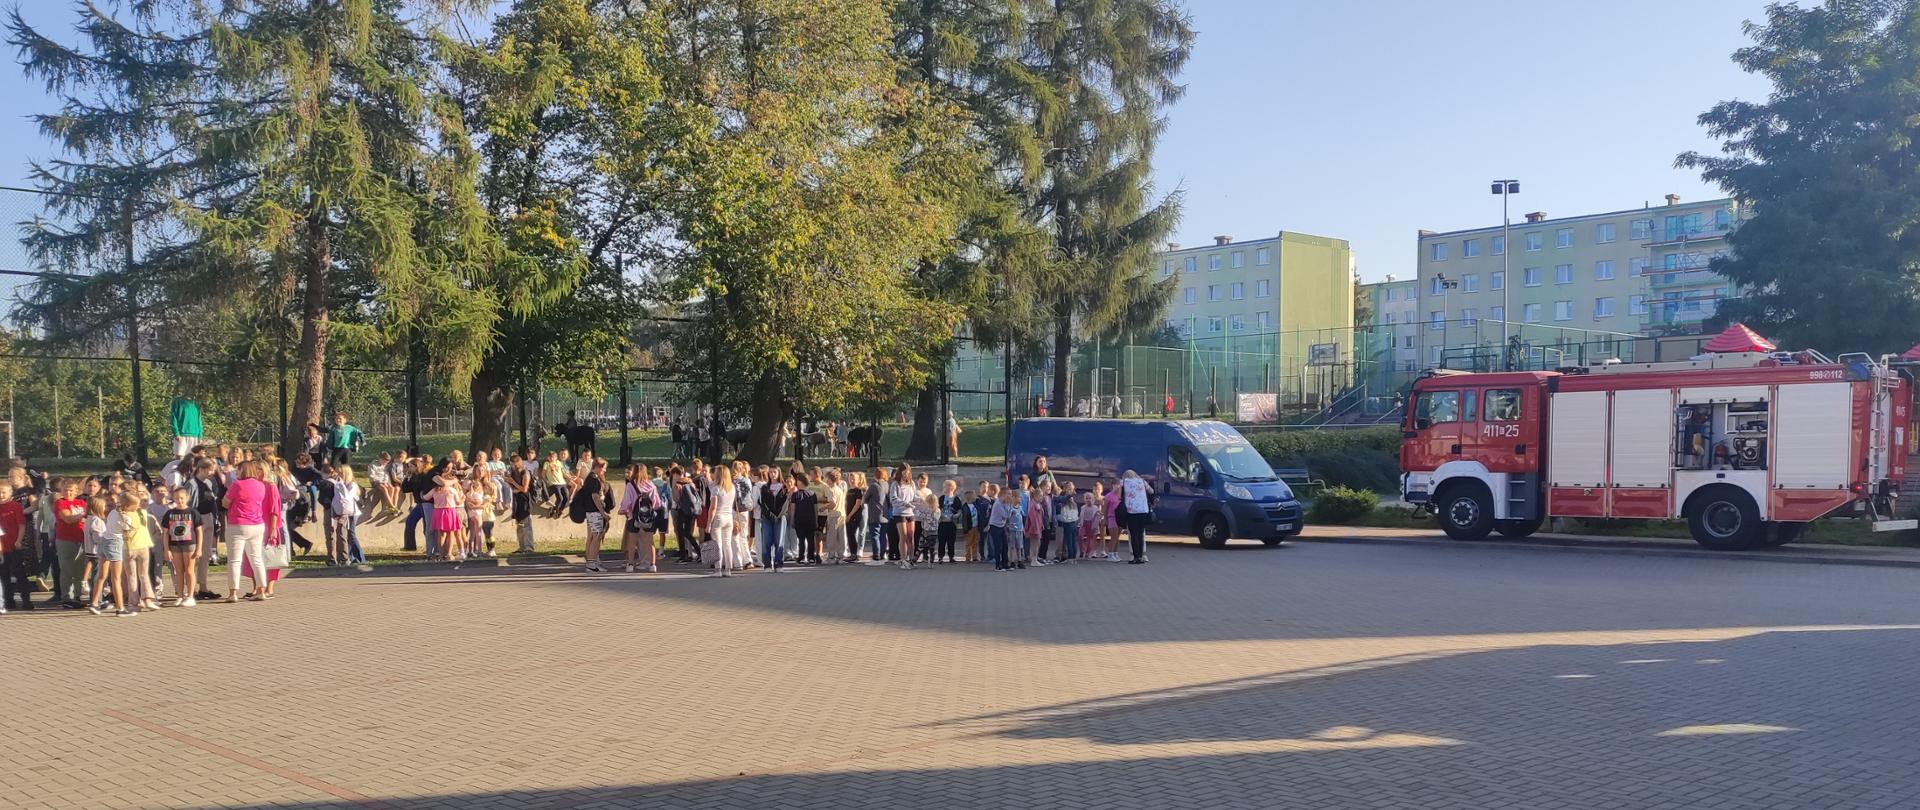 Plac przed szkołą podstawową na placu w punkcie ewakuacyjnym zgromadzone dzieci , dzieci razem ze swoimi wychowawcami w szeregach klasami, dalej po prawej wóż bojowy z jednostki ratowniczo gaśniczej w Brzezinach